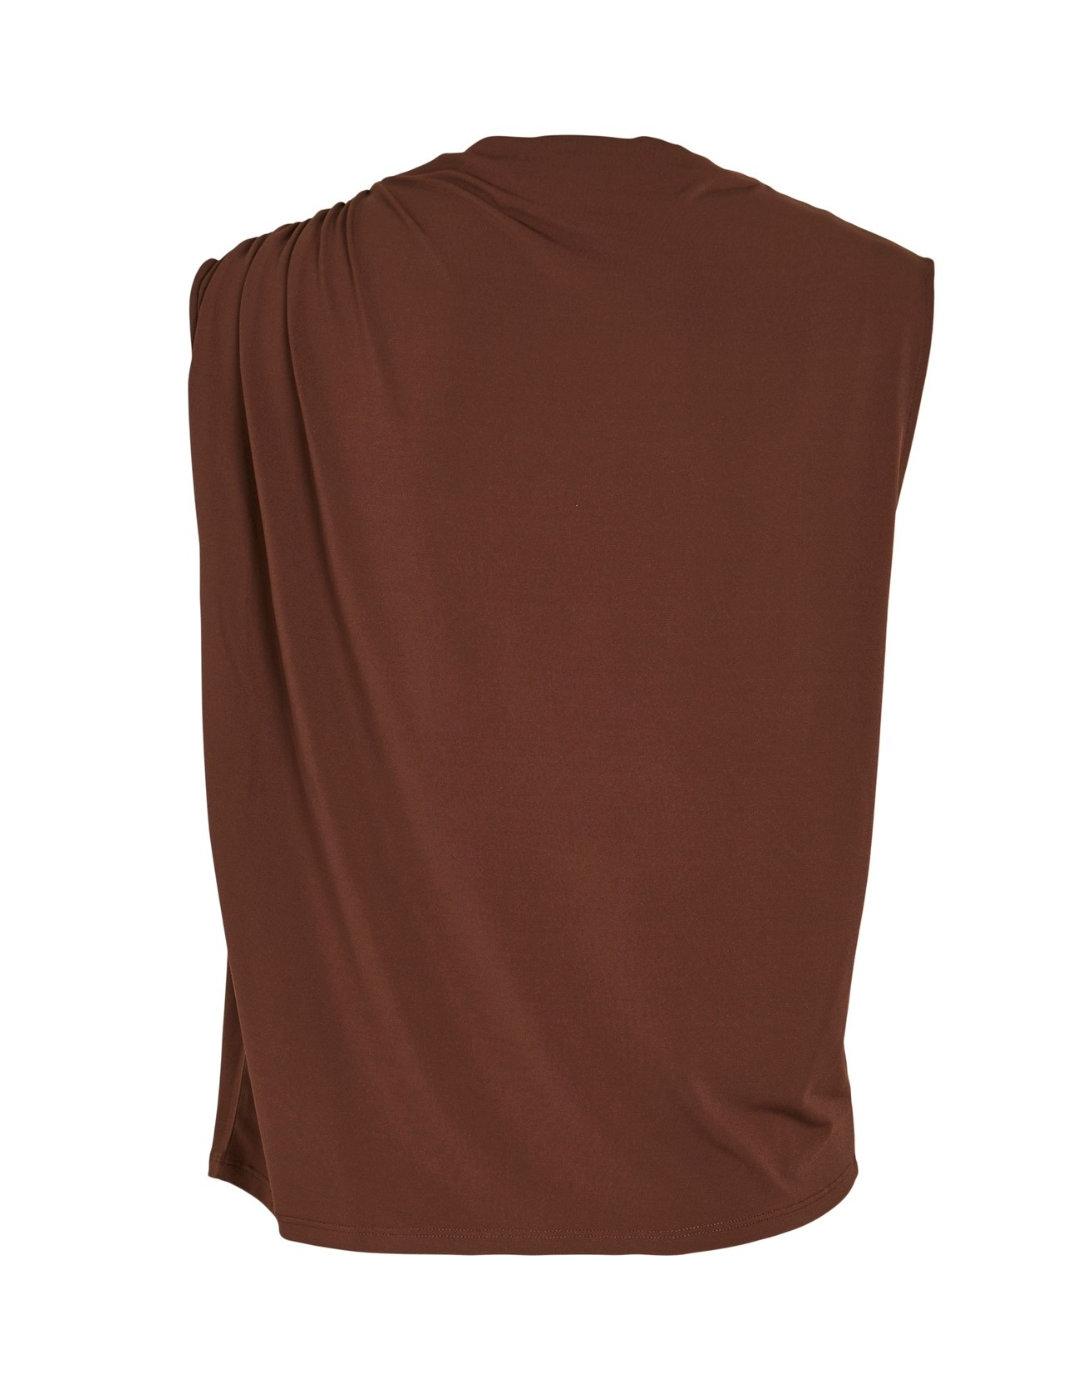 Camiseta top Vila Phoenix ajustada marrón fruncida de mujer